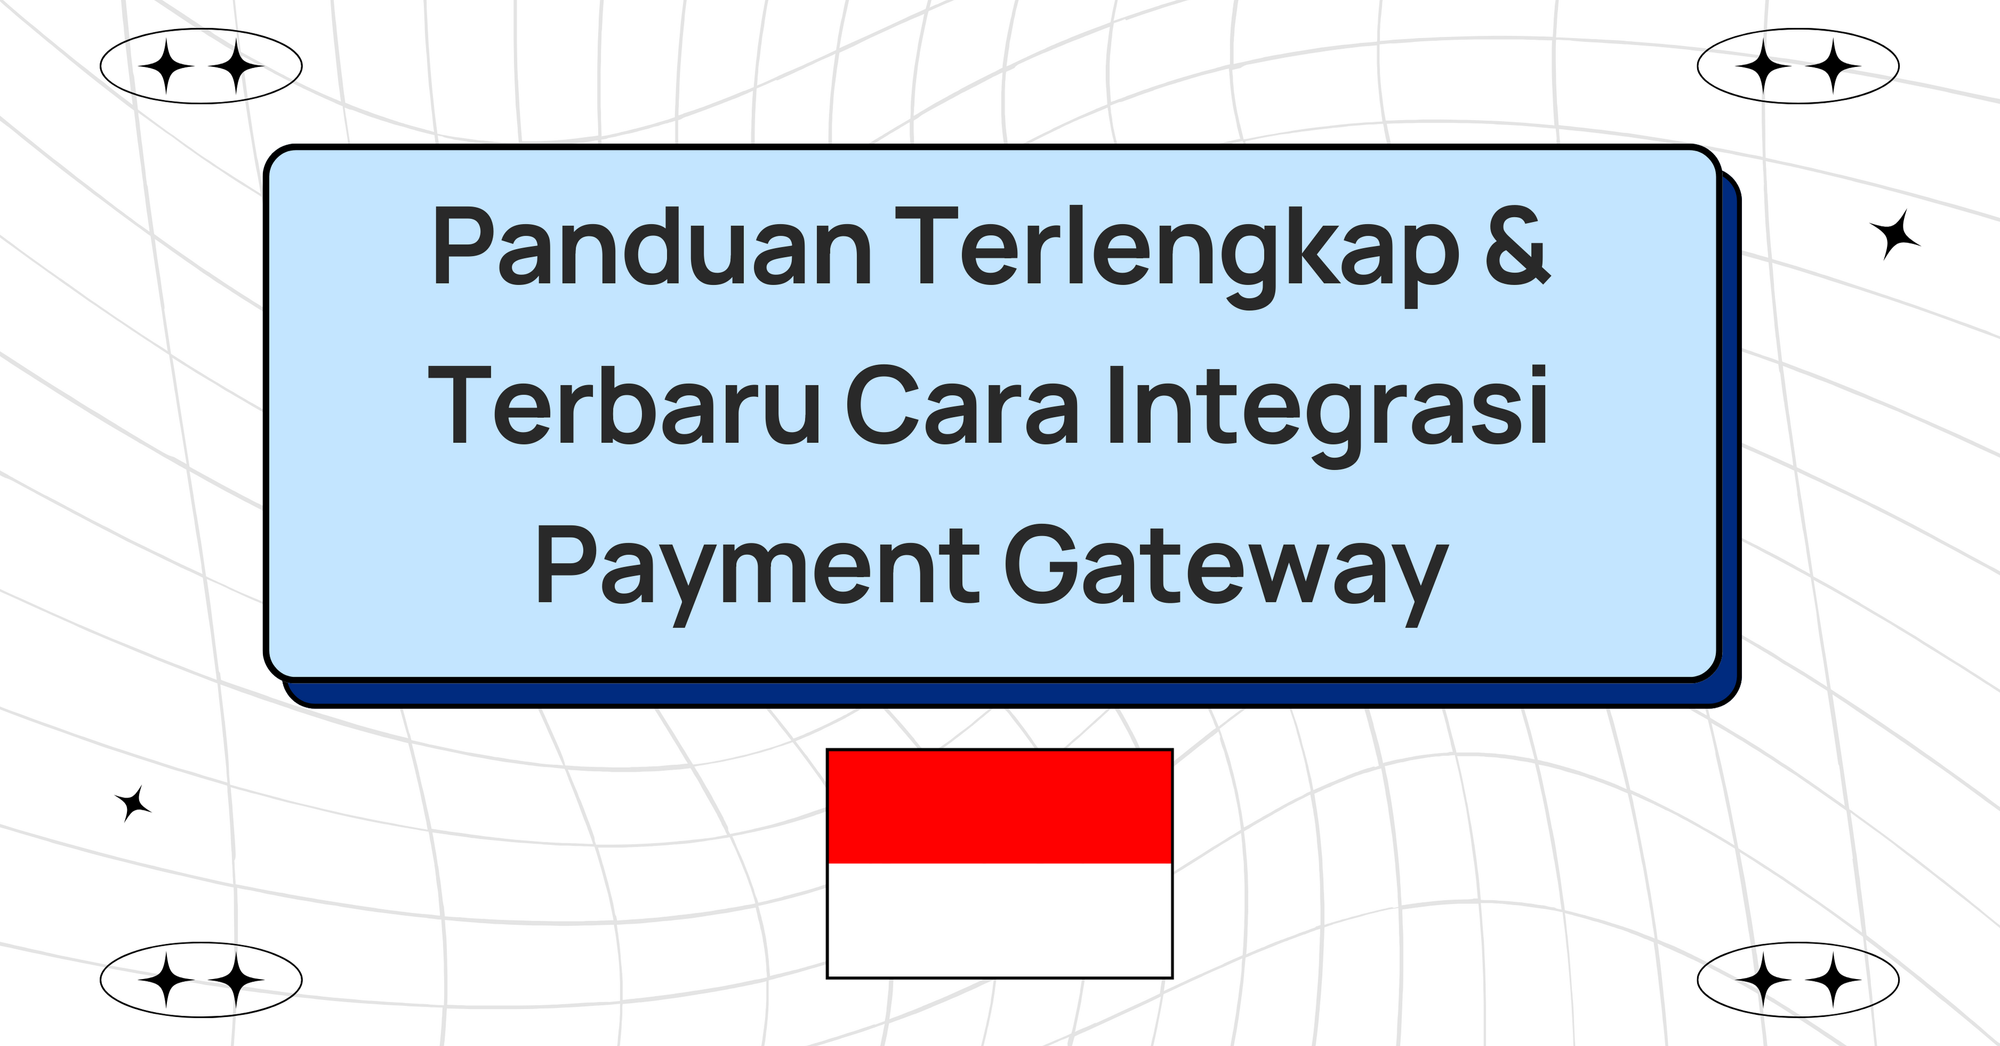 Panduan Terlengkap & Terbaru Cara Integrasi Payment Gateway di Indonesia